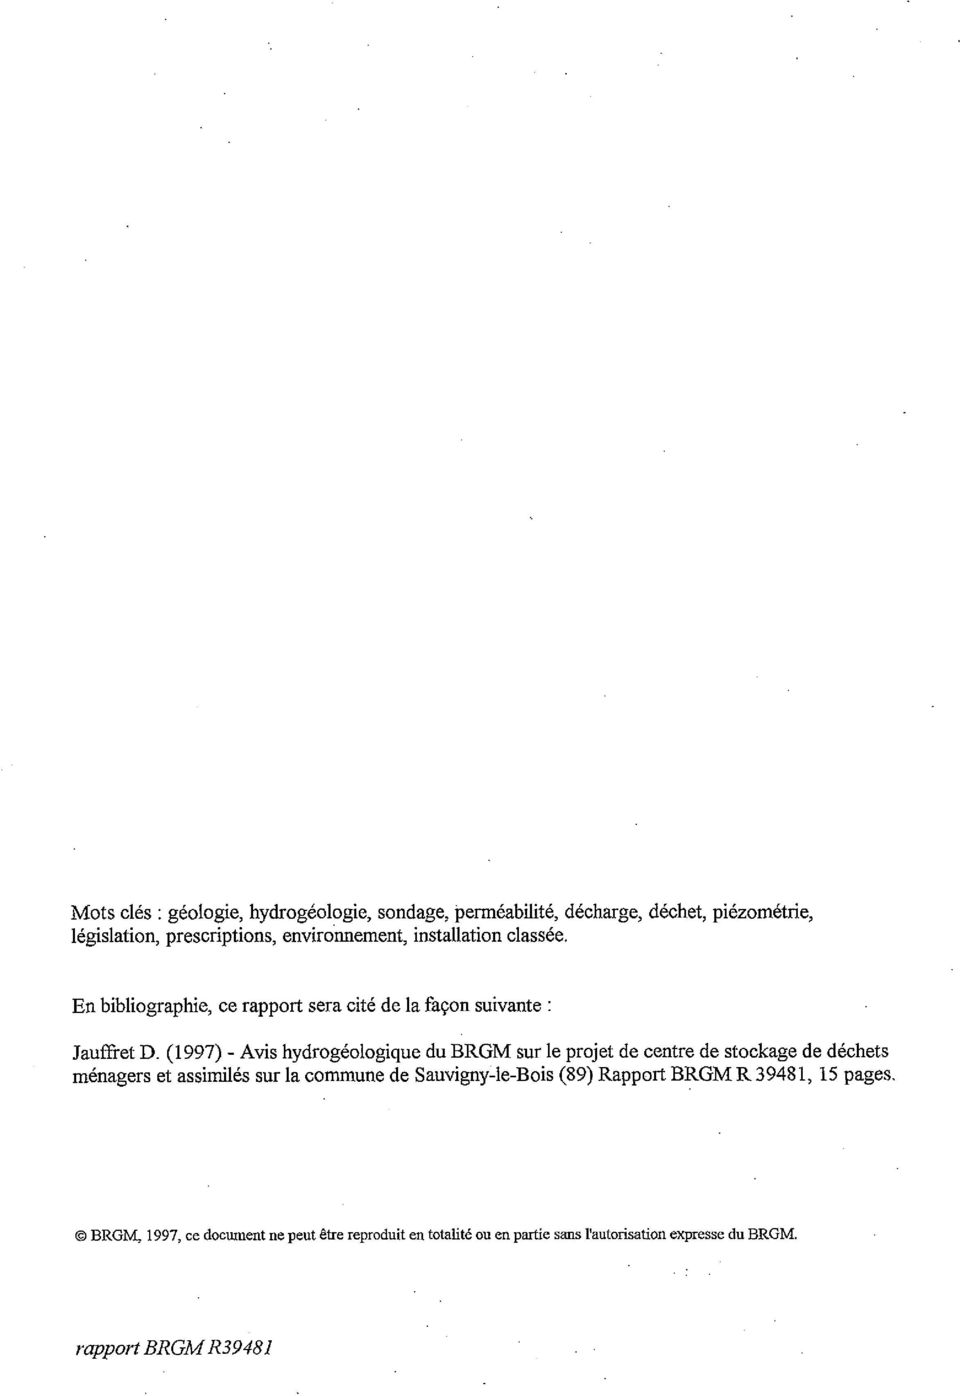 (1997) - Avis hydrogéologique du BRGM sur le projet de centre de stockage de déchets ménagers et assimilés sur la commune de